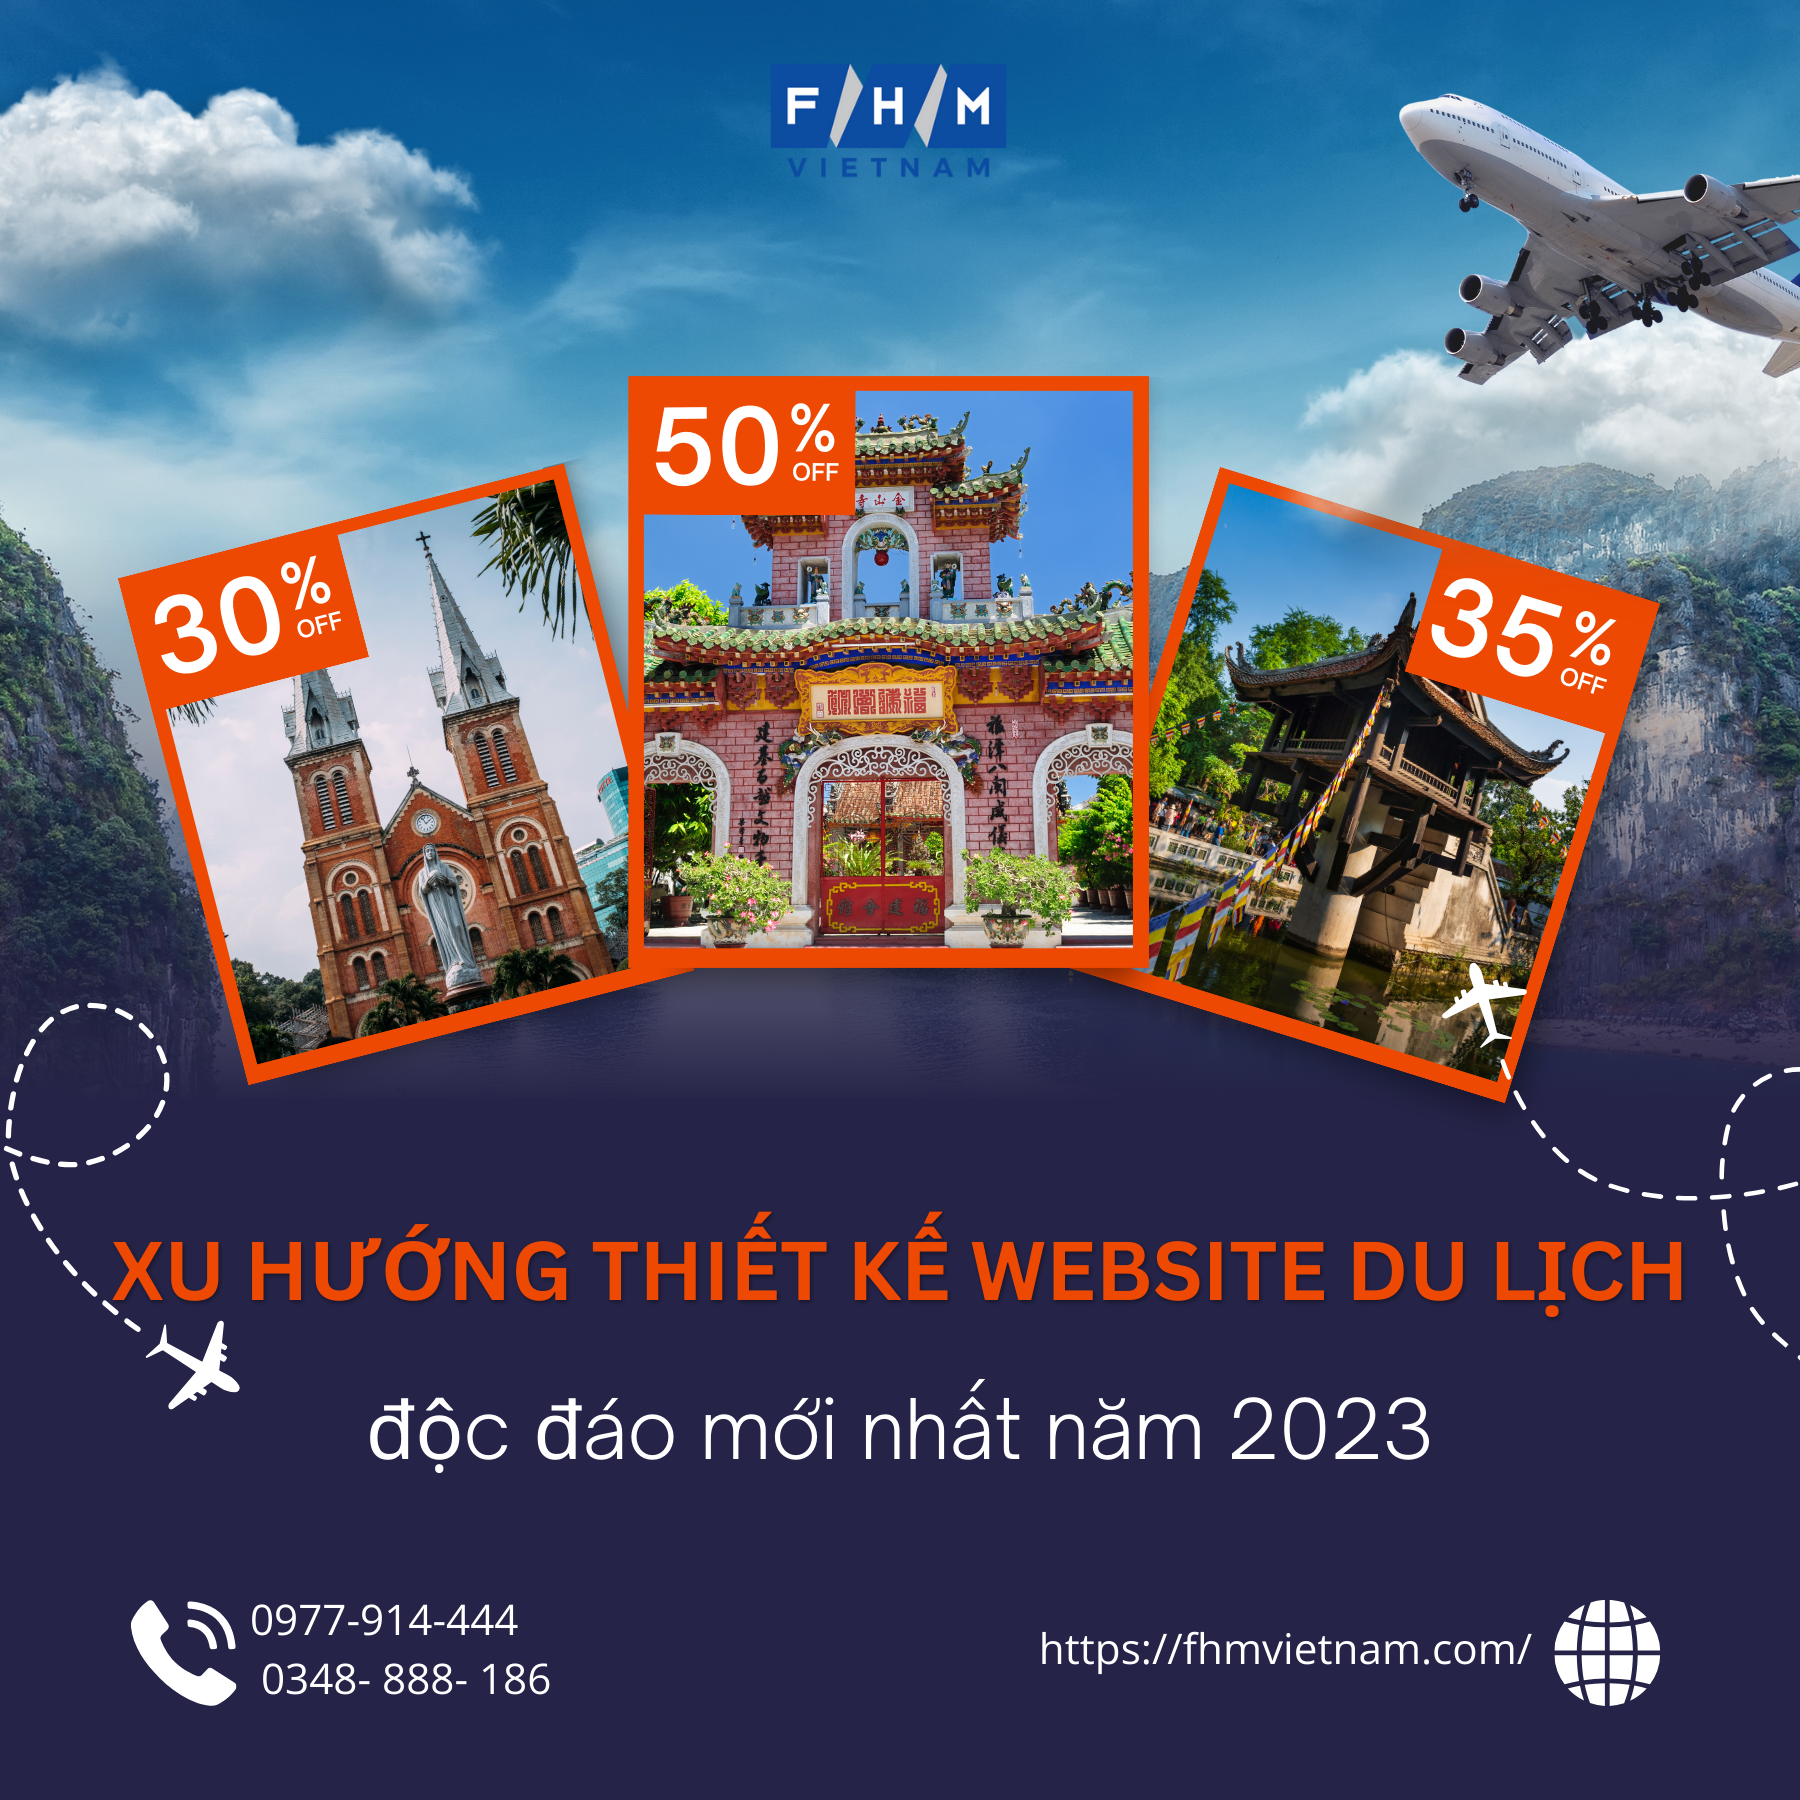 Xu hướng thiết kế website du lịch độc đáo mới nhất năm 2023